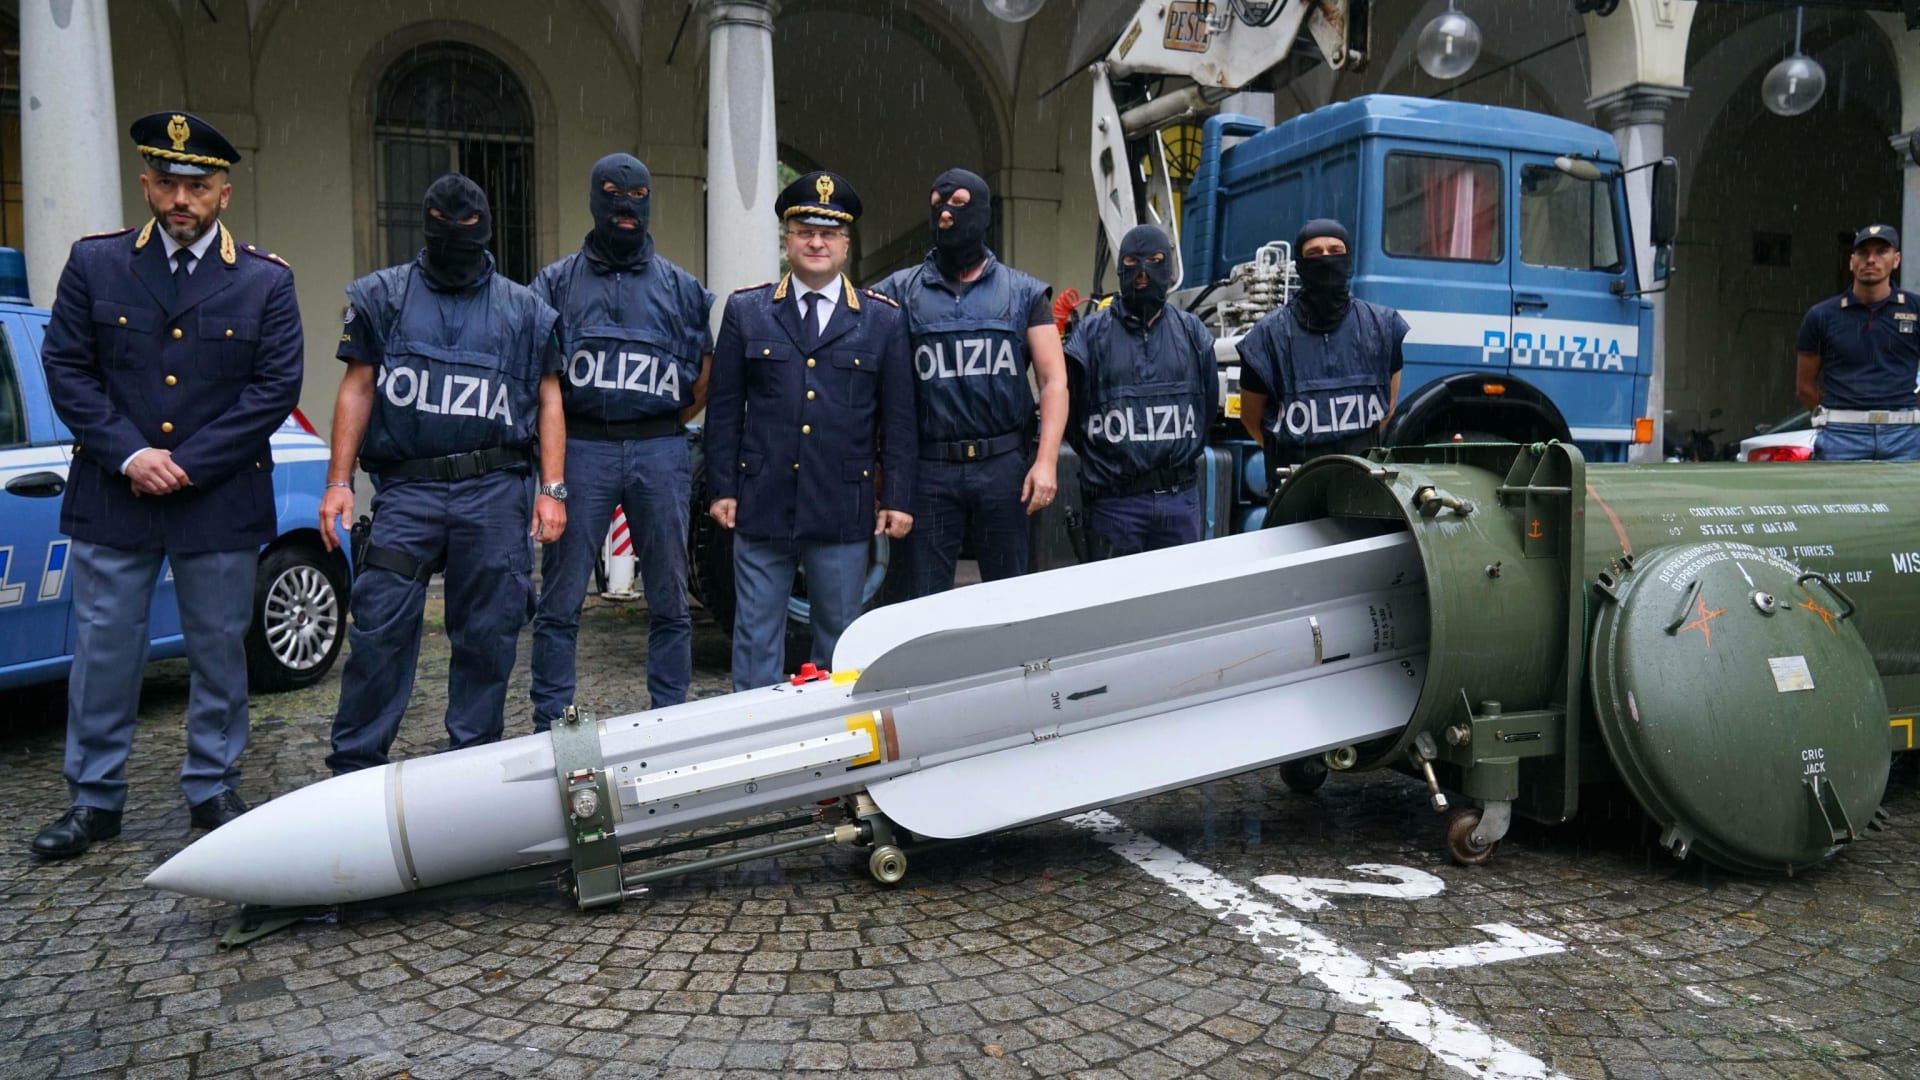 شاهد.. ضبط صاروخ وترسانة أسلحة متطورة في حوزة "نازيين" في إيطاليا